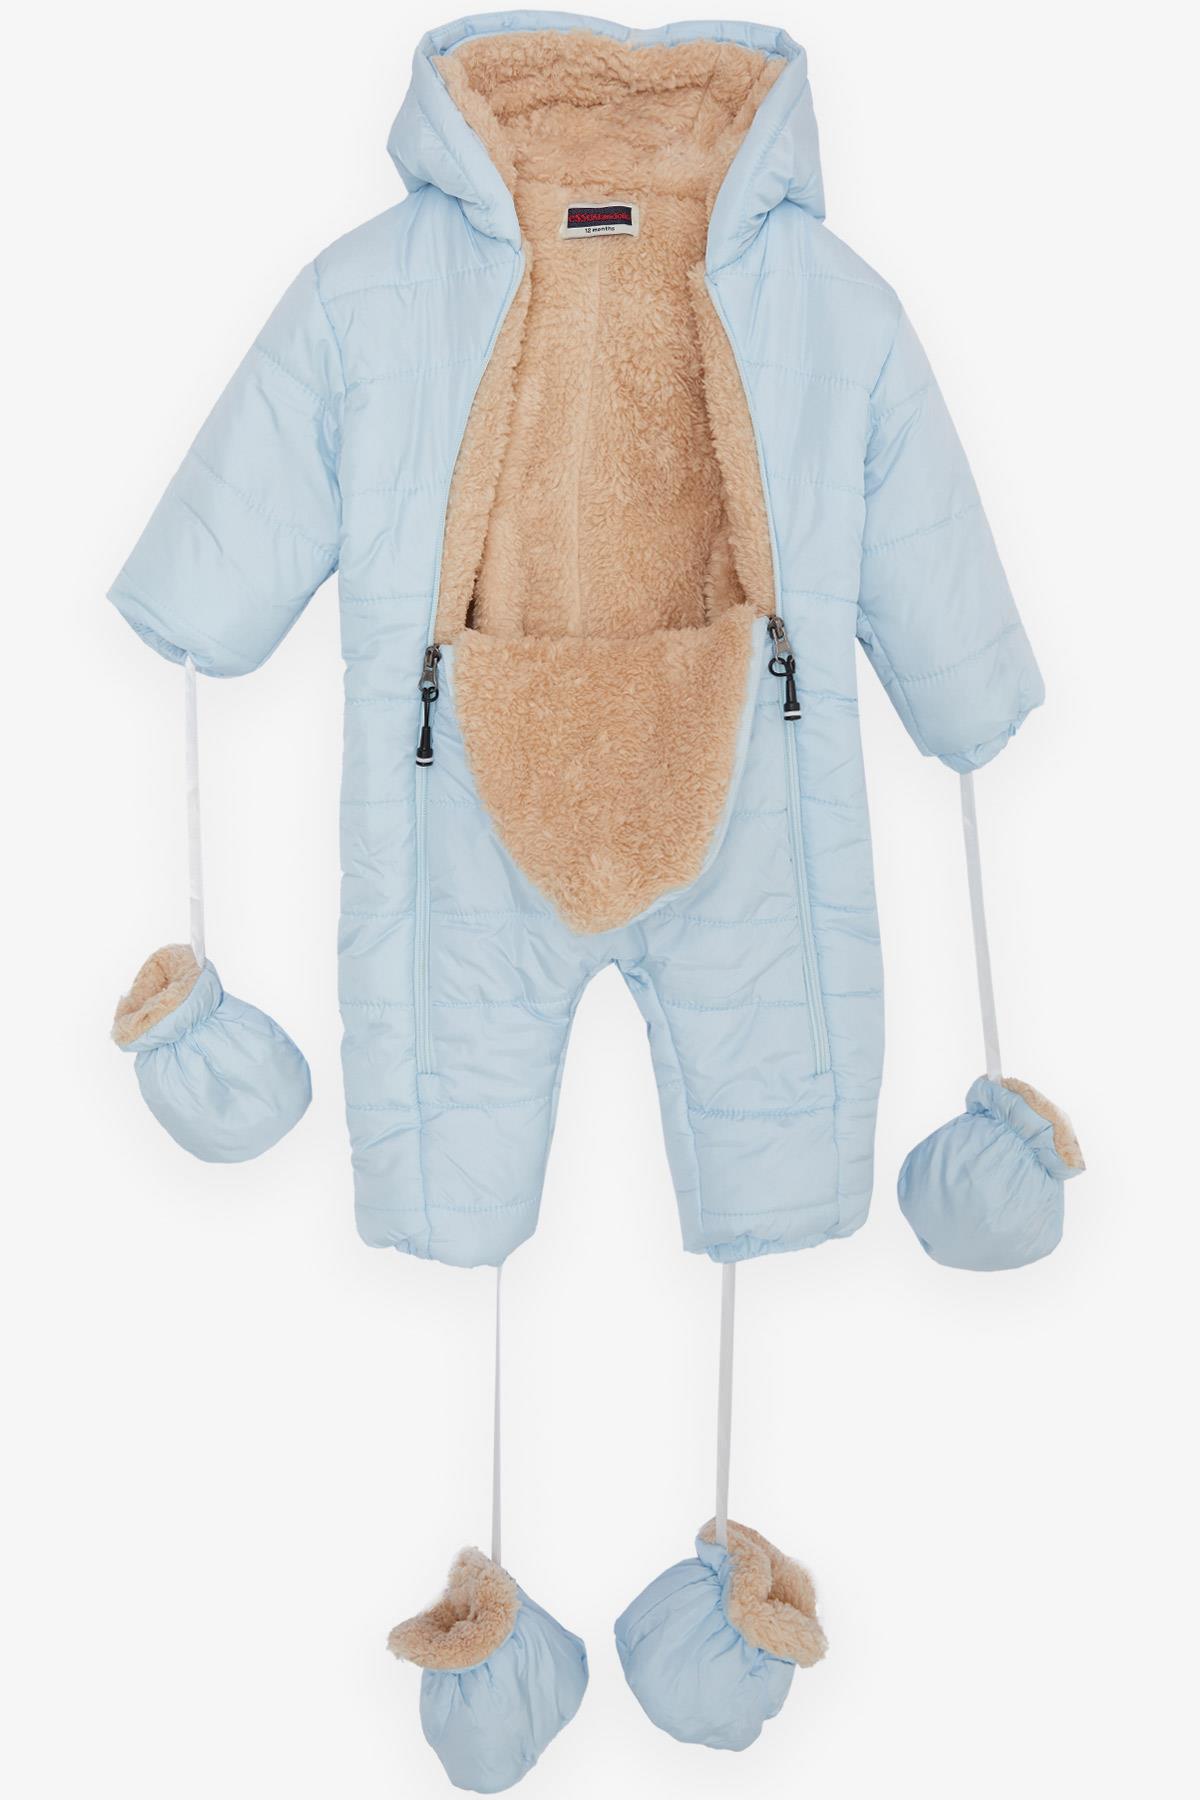 Erkek Bebek Astronot Mont Kapüşonlu Baskılı Bebe Mavisi (9 Ay)